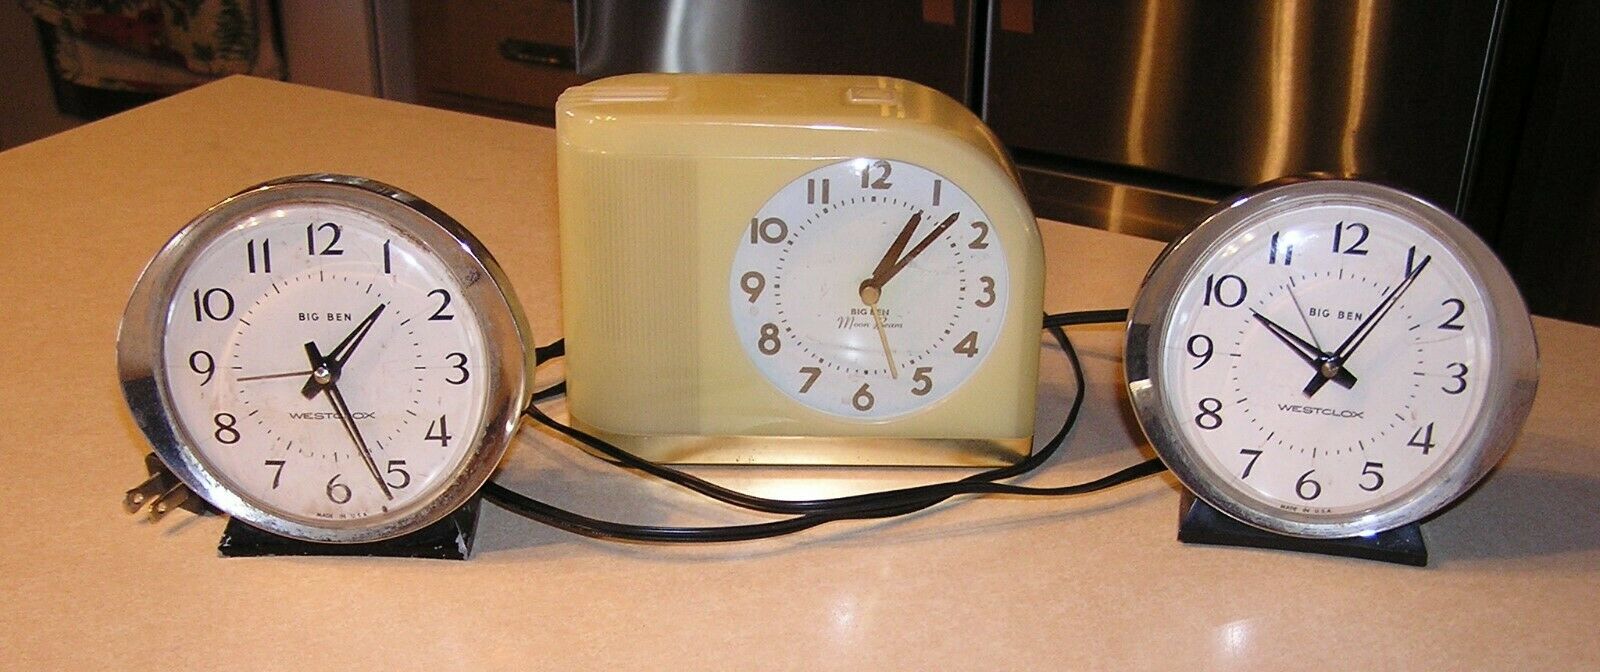 1950's BIG BEN Moon Beam Alarm Clock in Yellow Case & 2 Westclox Big Ben Wind-up